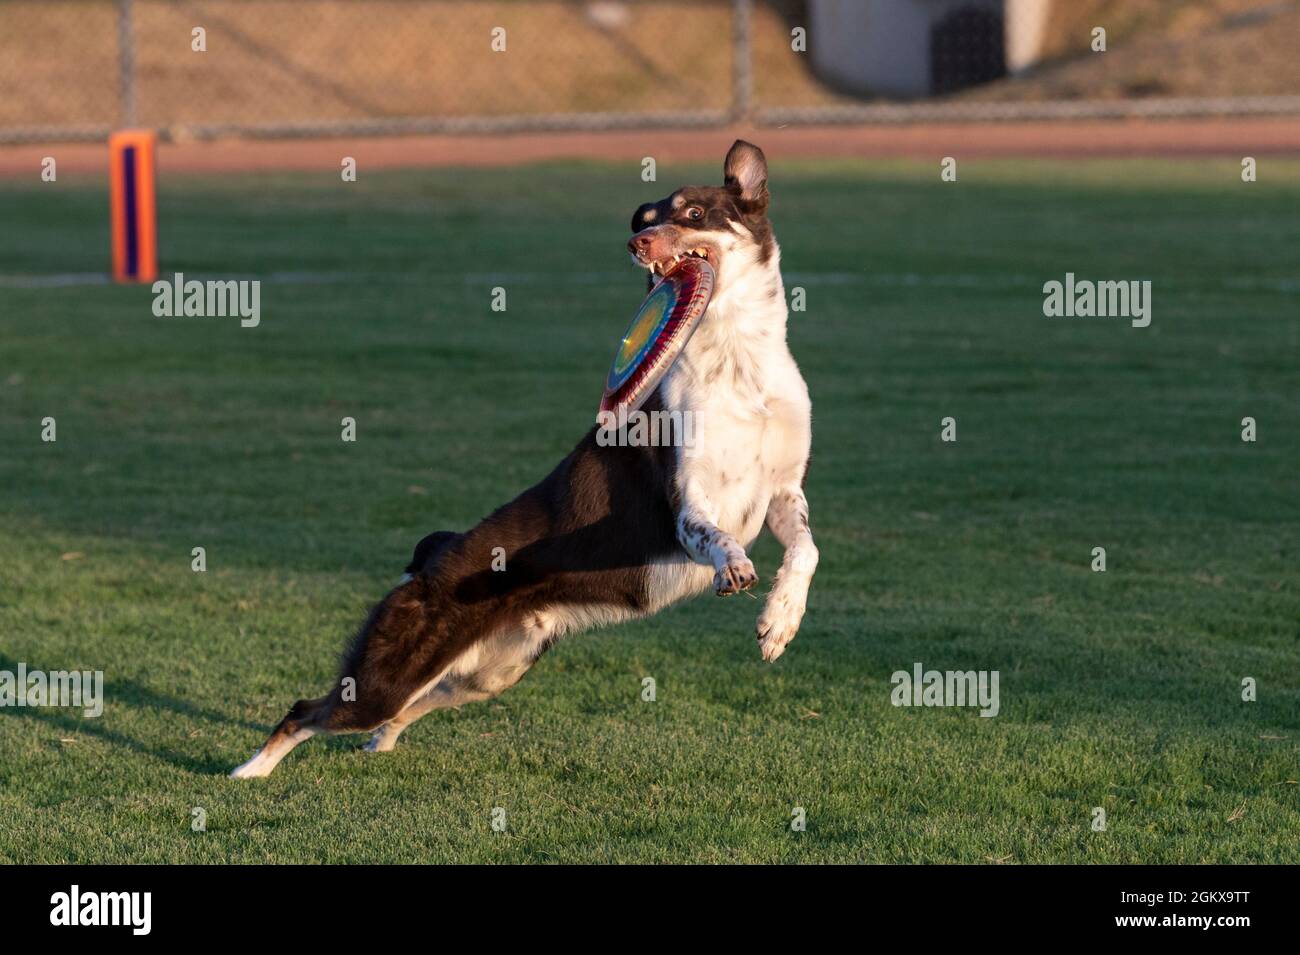 Brauner und weißer Hund mit Regenbogenscheibe, den er gerade auf dem Gras gefangen hat Stockfoto